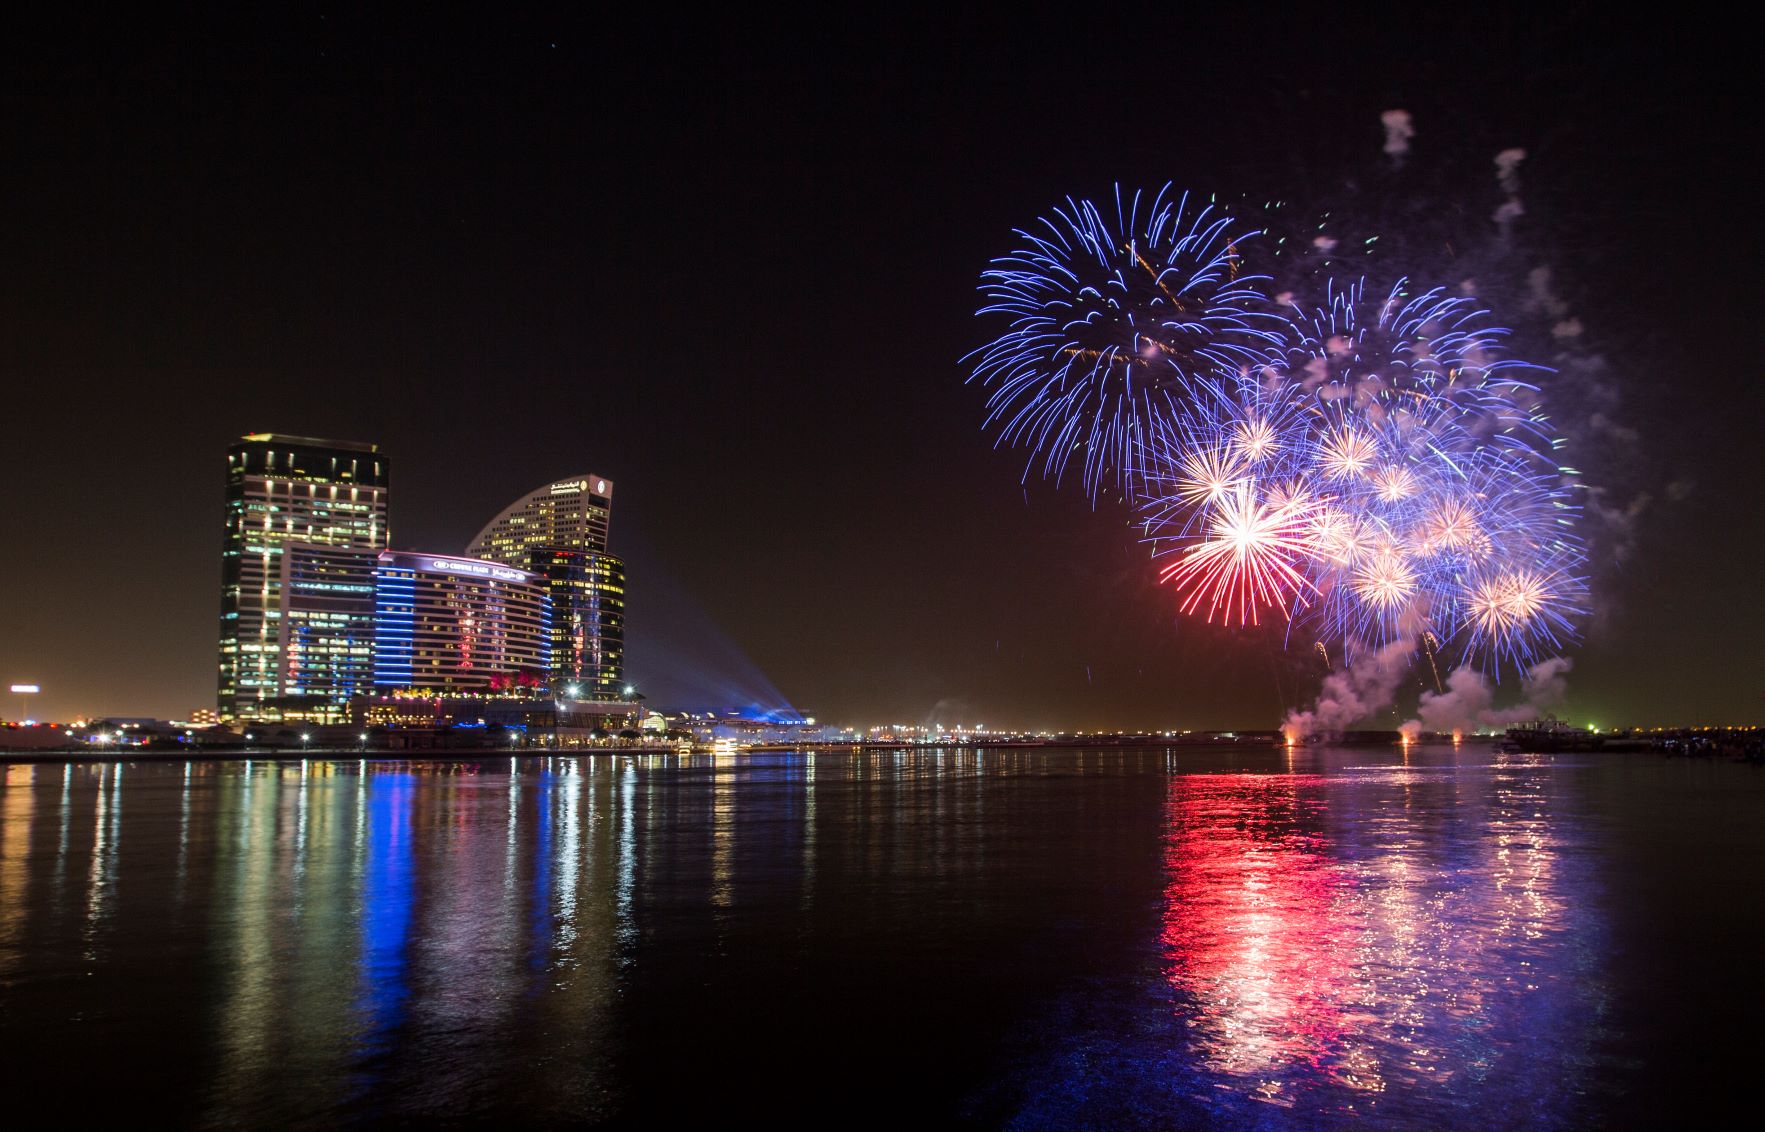 دبي فستيفال سيتي مول يطلق الدورة الثانية من مهرجان دبي للمفروشات